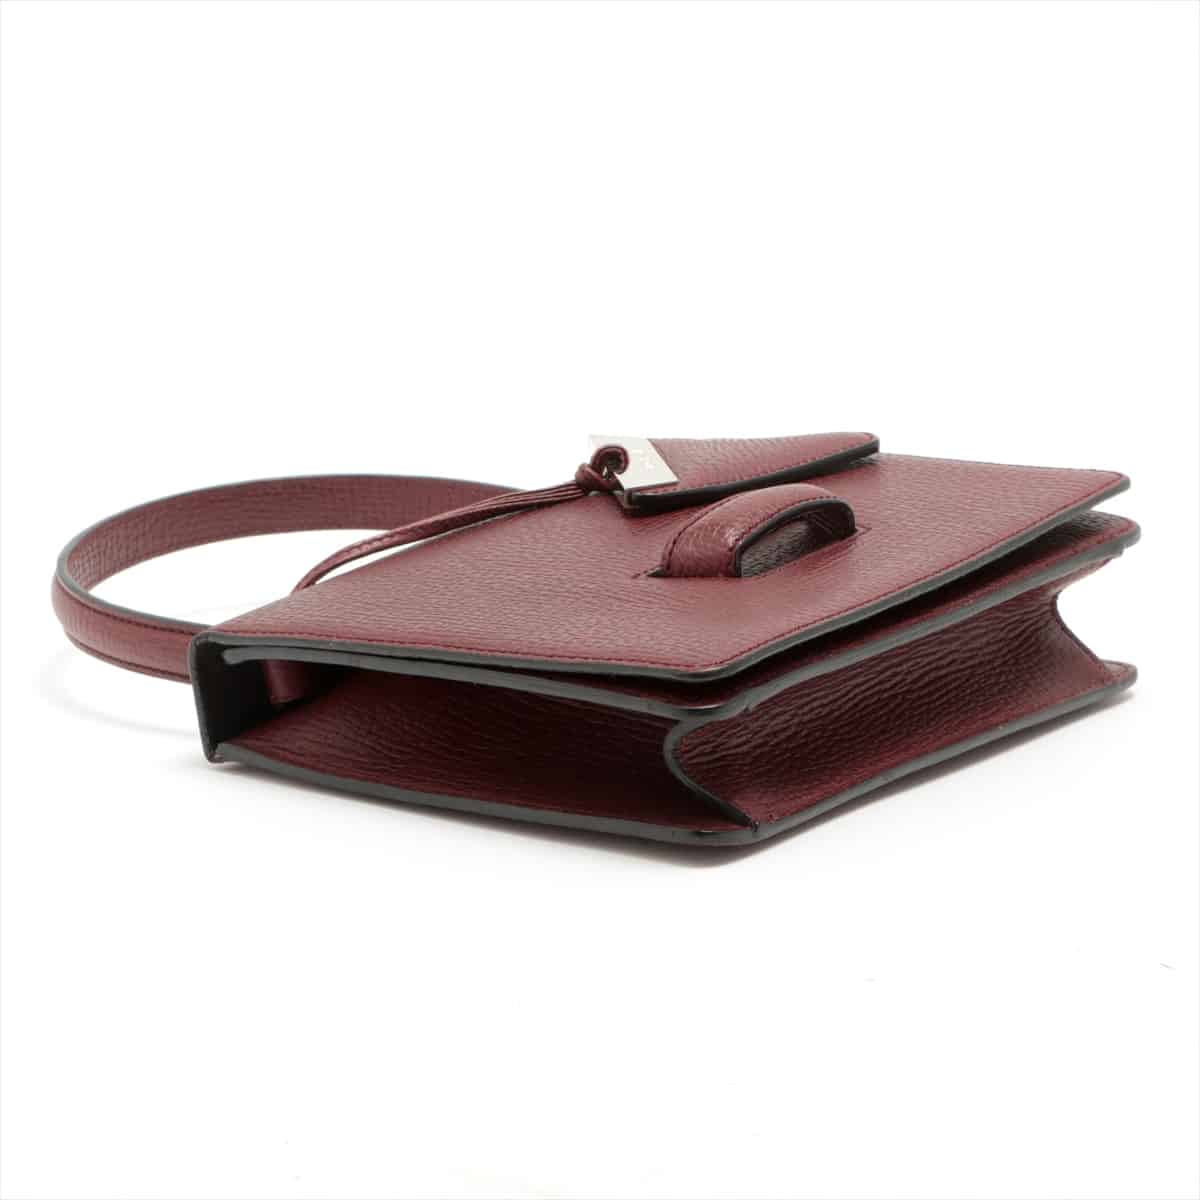 Loewe Barcelona Leather 2way handbag Bordeaux